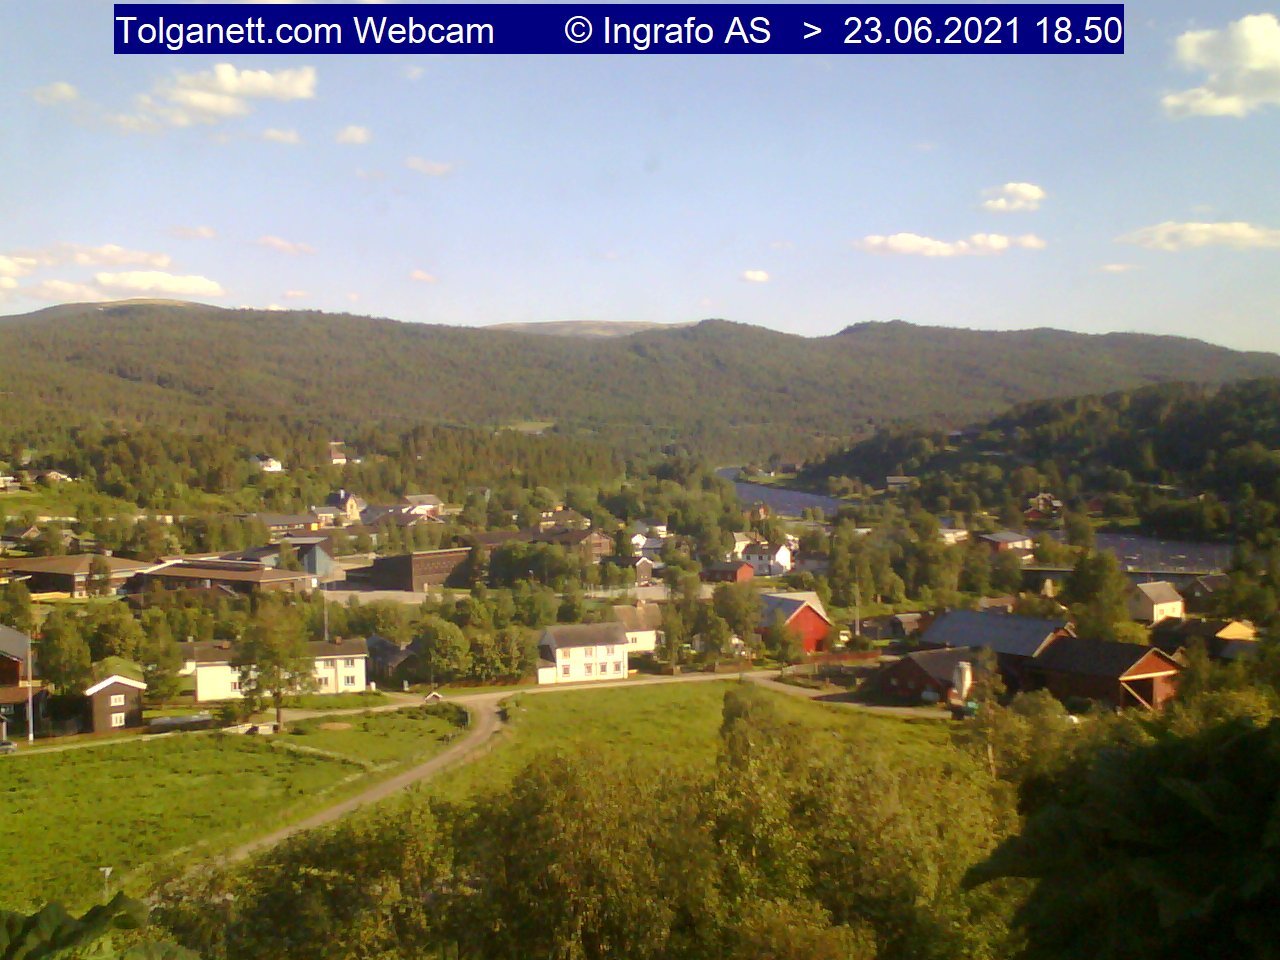 Webcam: Village Center of Tolga, Norvegia